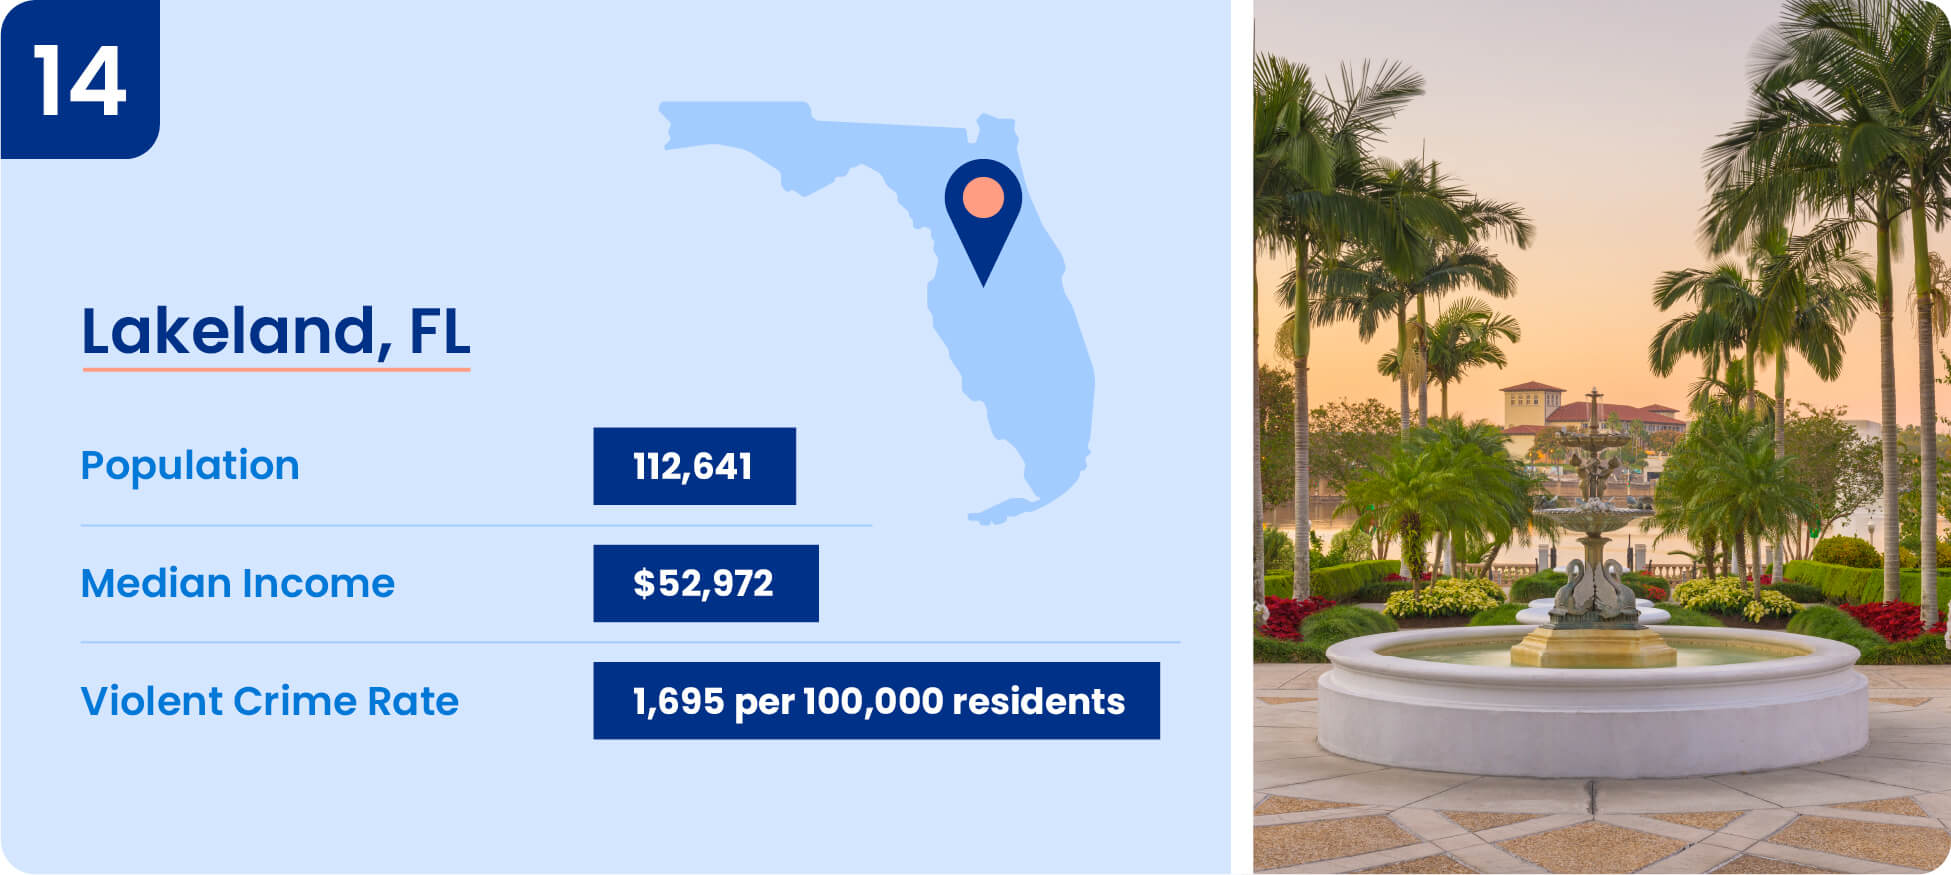 Image shows safety data including median income, population, and violent crime rate for Lakeland, Florida.